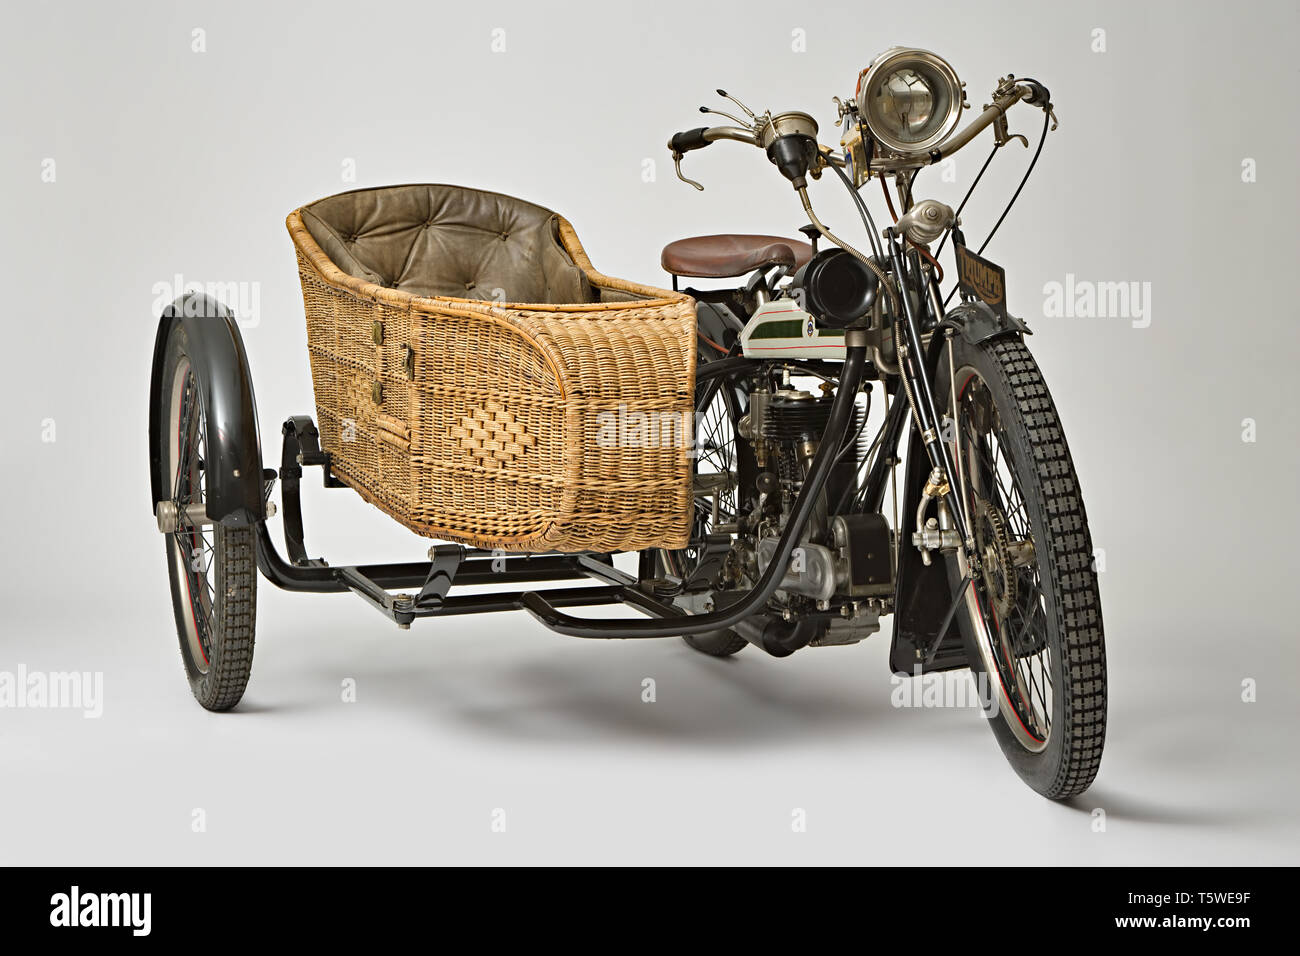 Moto d'epoca Triumph Uhr Seite Marca: Triumph modello: H Seite nazione: Regno Unito - Coventry Anno: 1918 condizioni: restaurato cilindrata Stockfoto